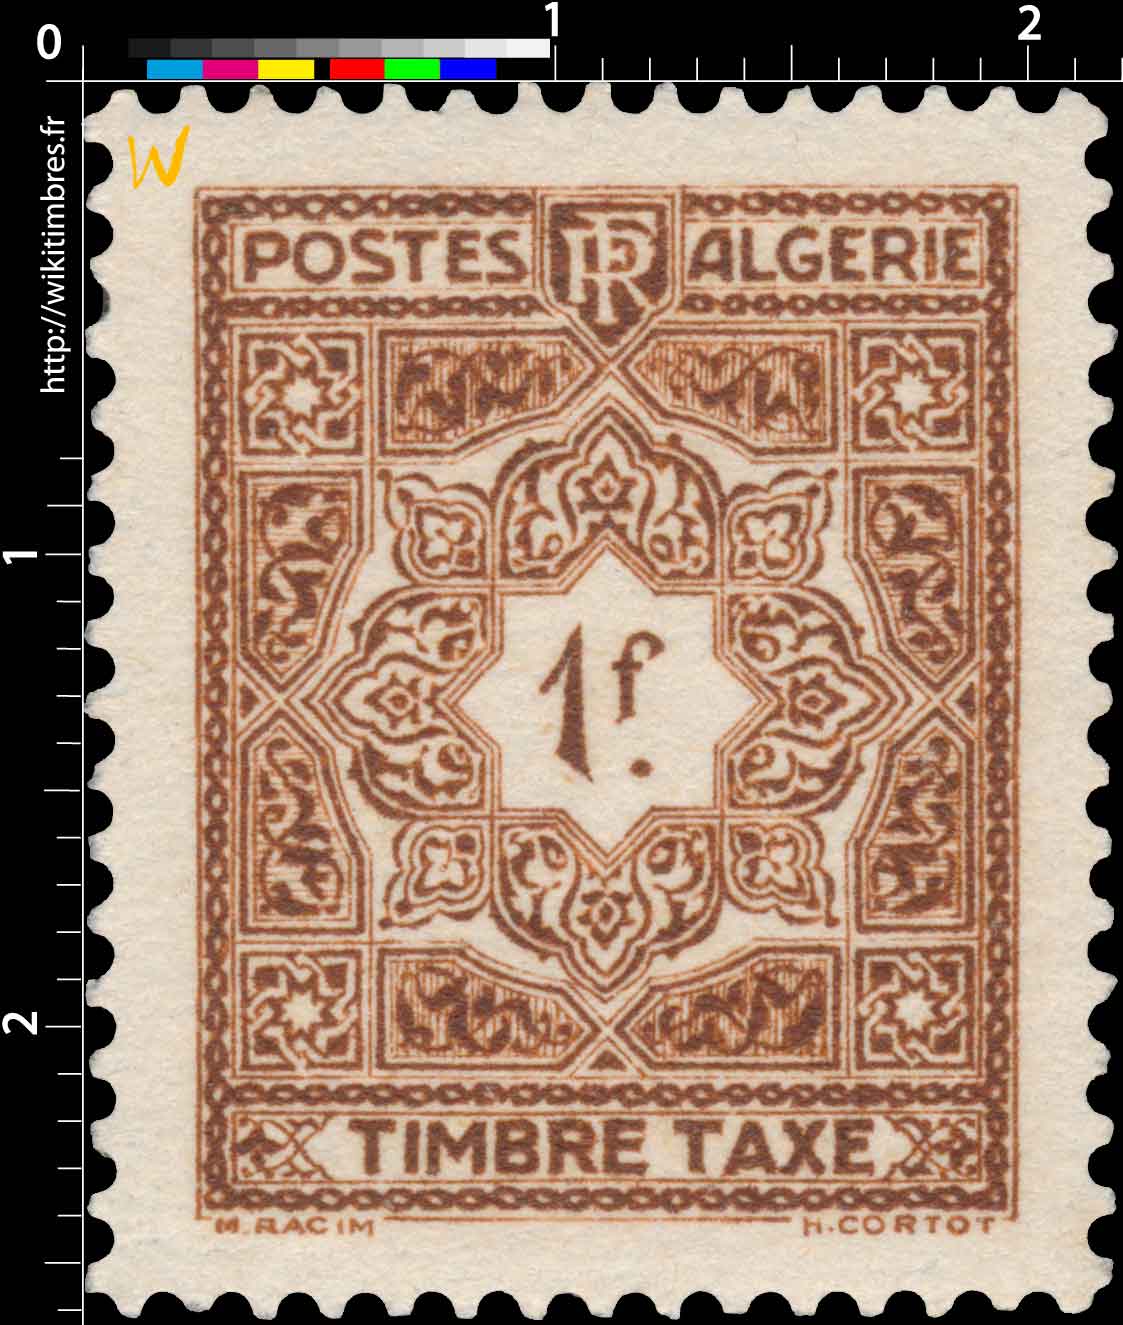 Algérie - type mosaïques